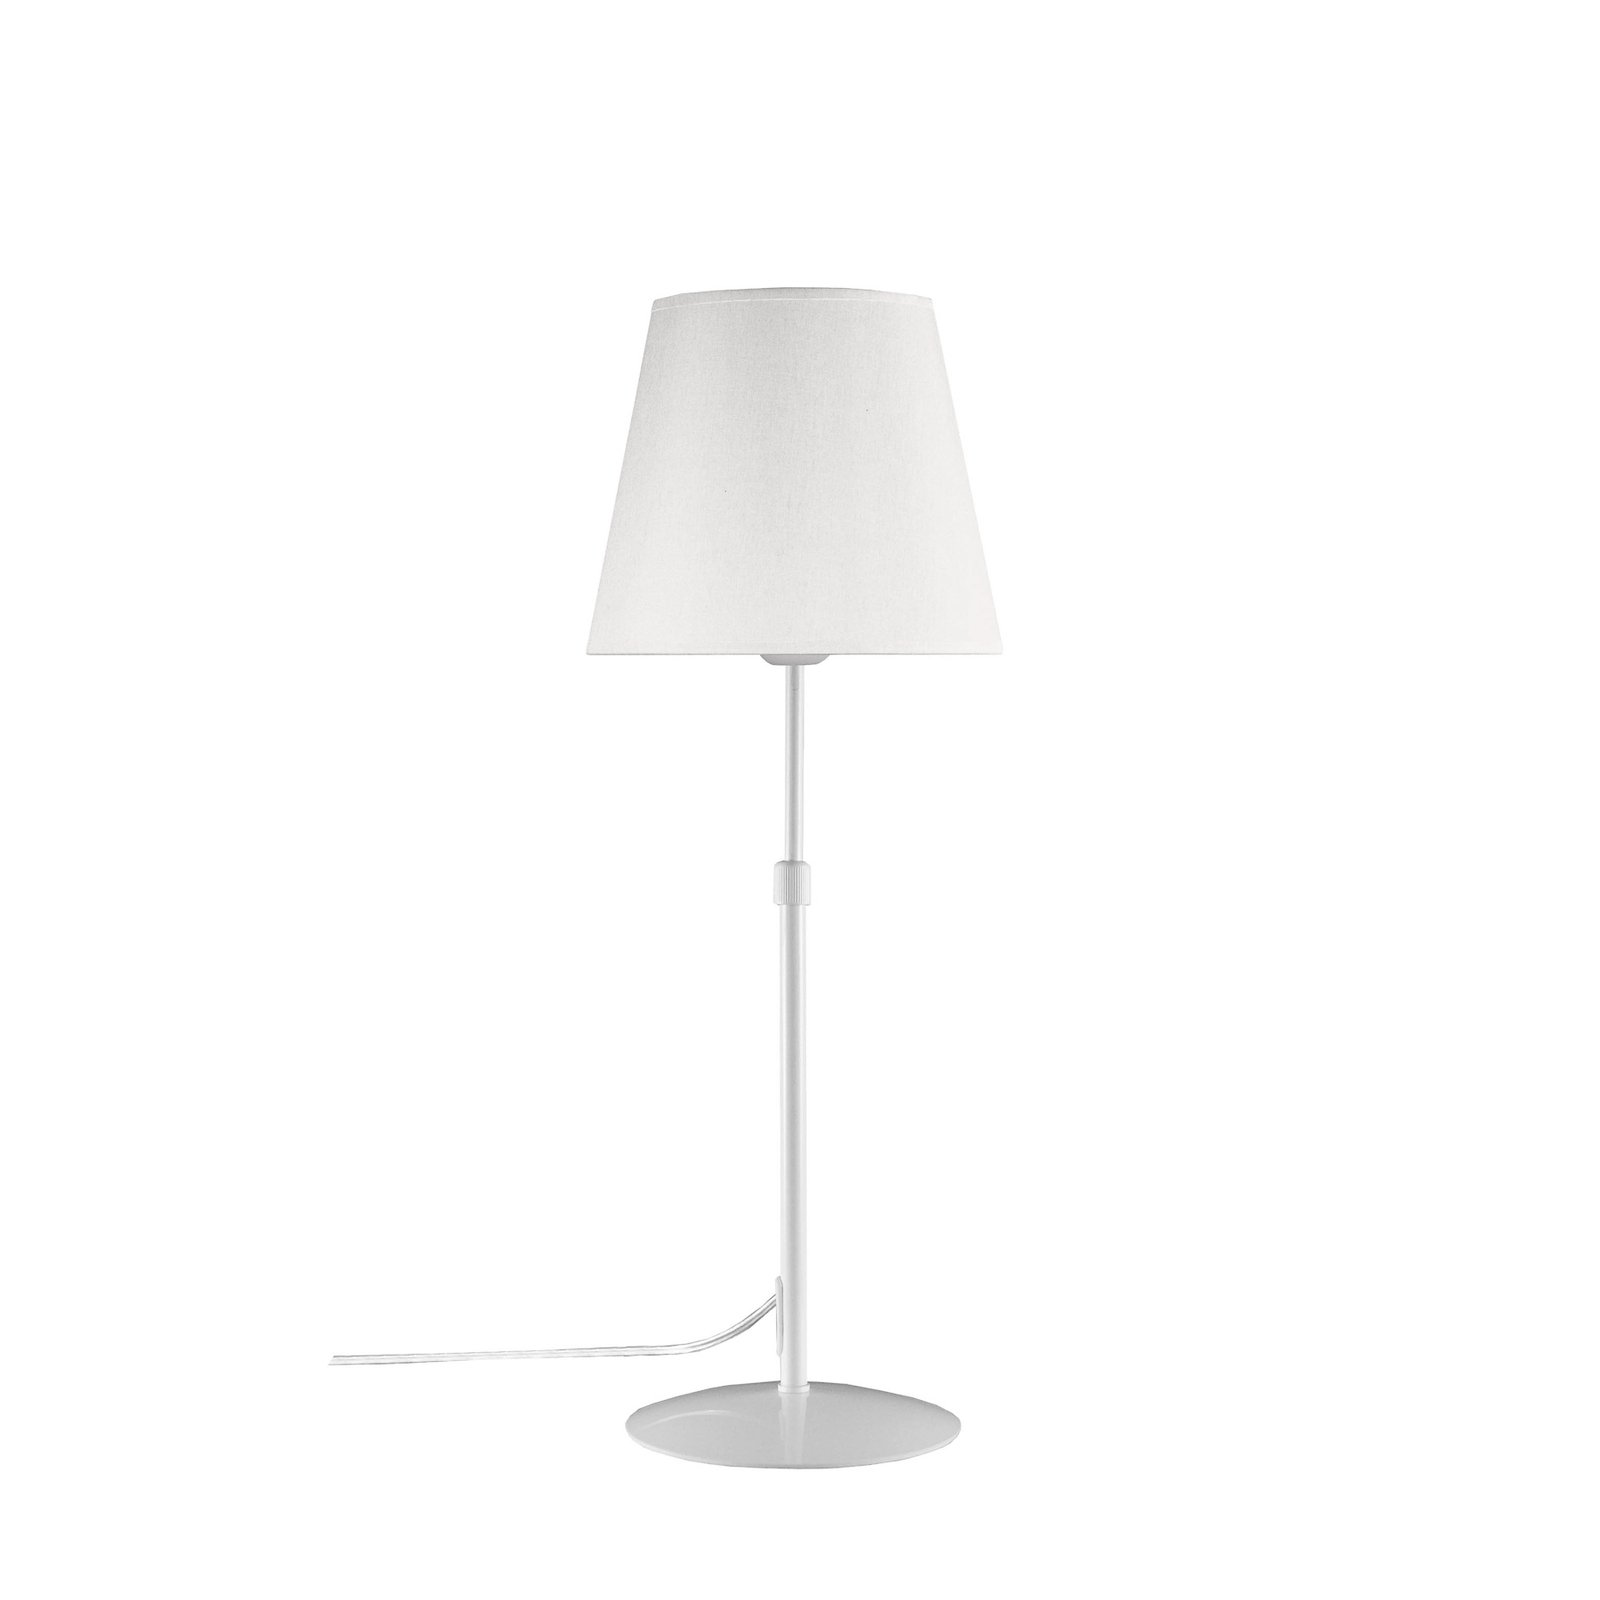 Aluminor Store bordslampa, vit/vit